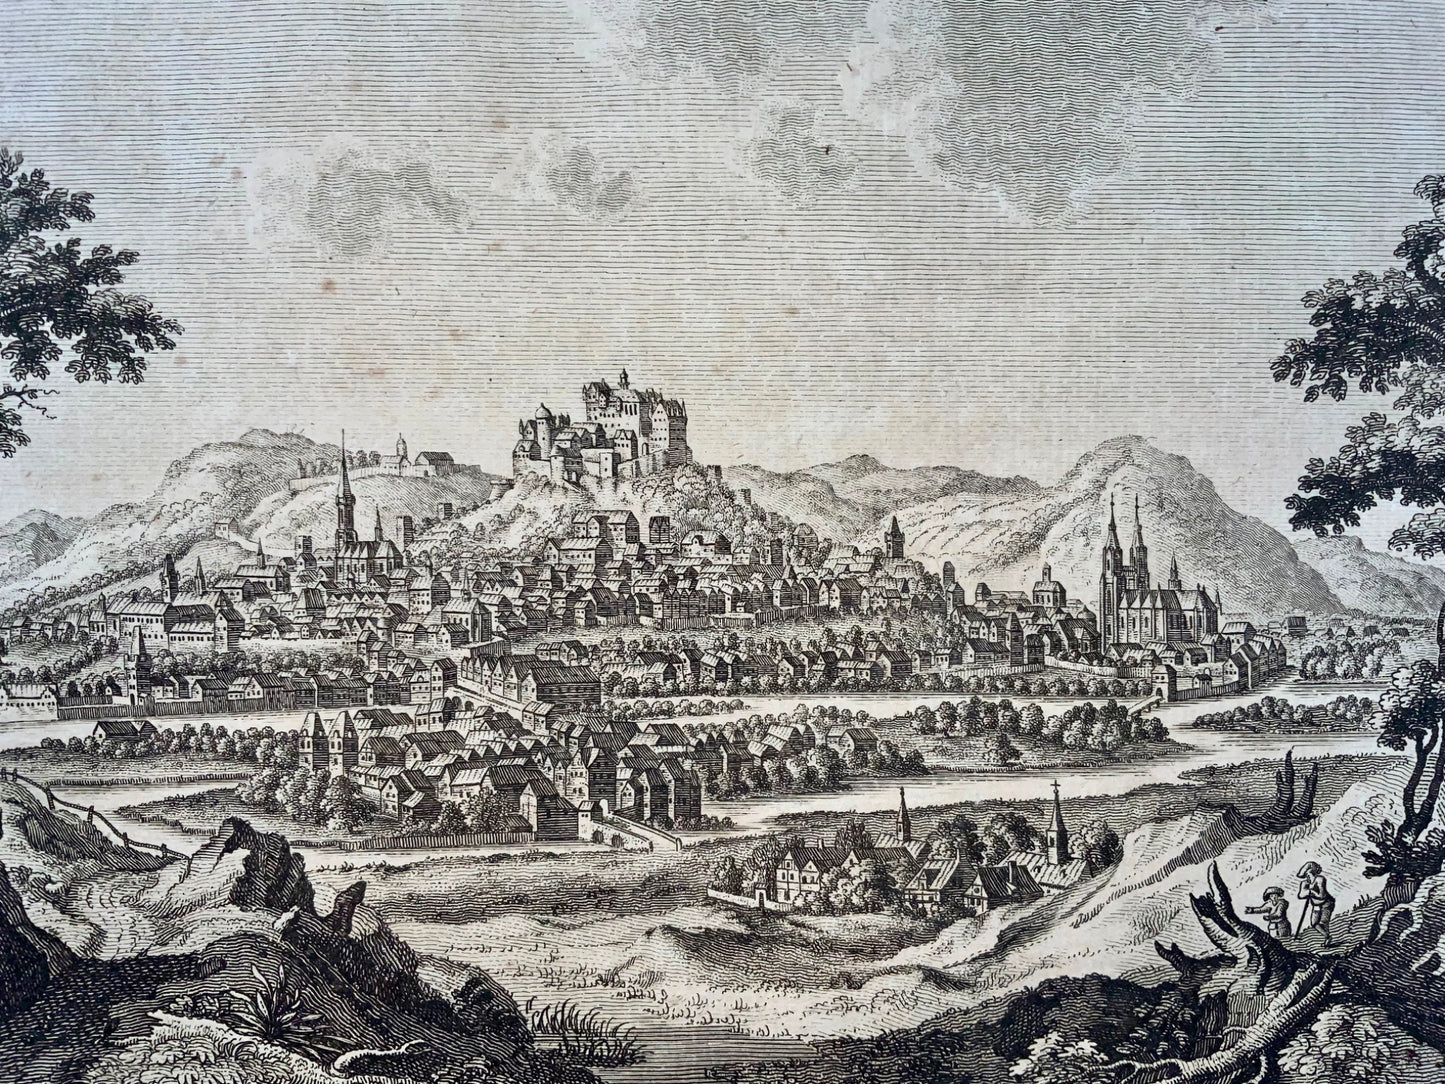 1782 Marburg à Cassel, Allemagne, F. Cary, gravure sur cuivre, rare, voyage